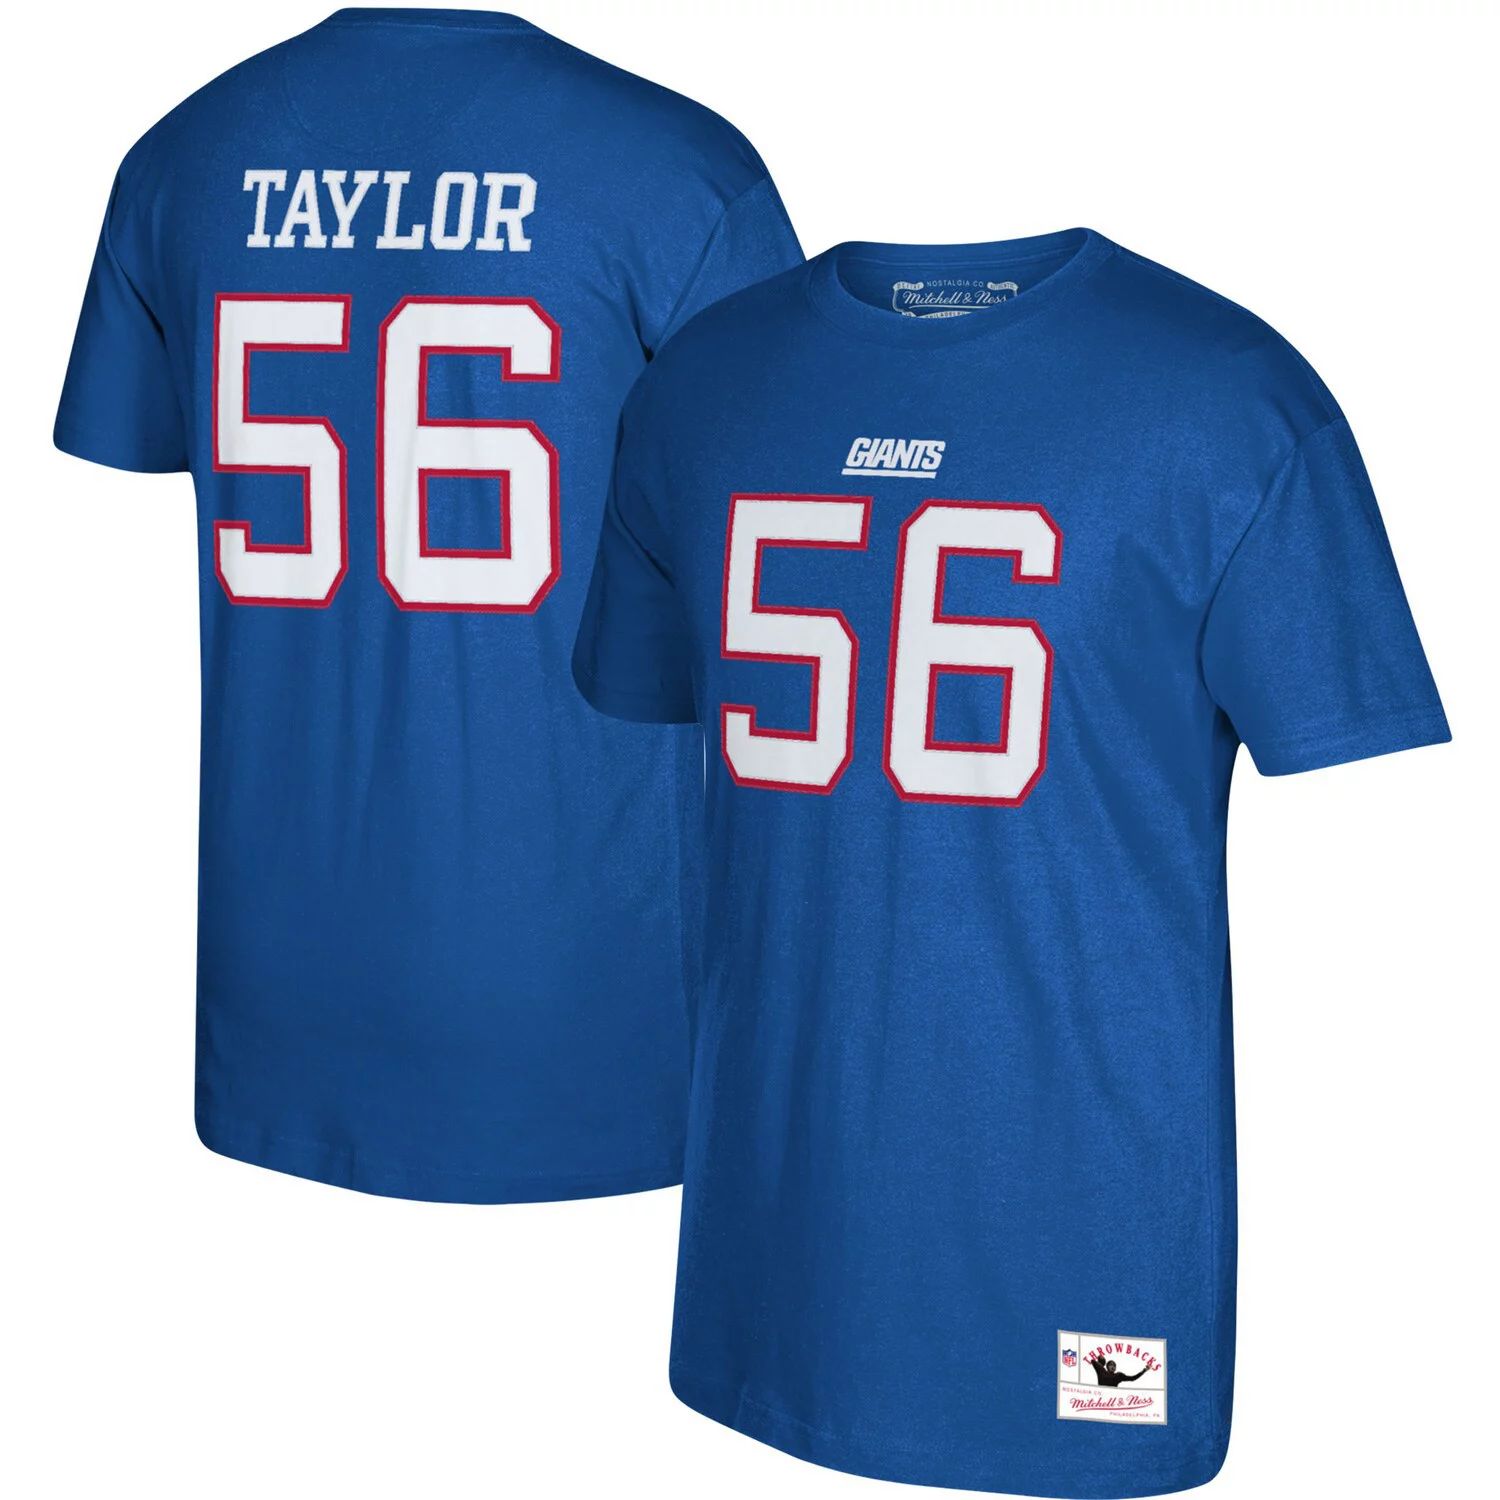 Мужская футболка Mitchell & Ness Lawrence Taylor Royal New York Giants с логотипом игрока в отставке, именем и номером